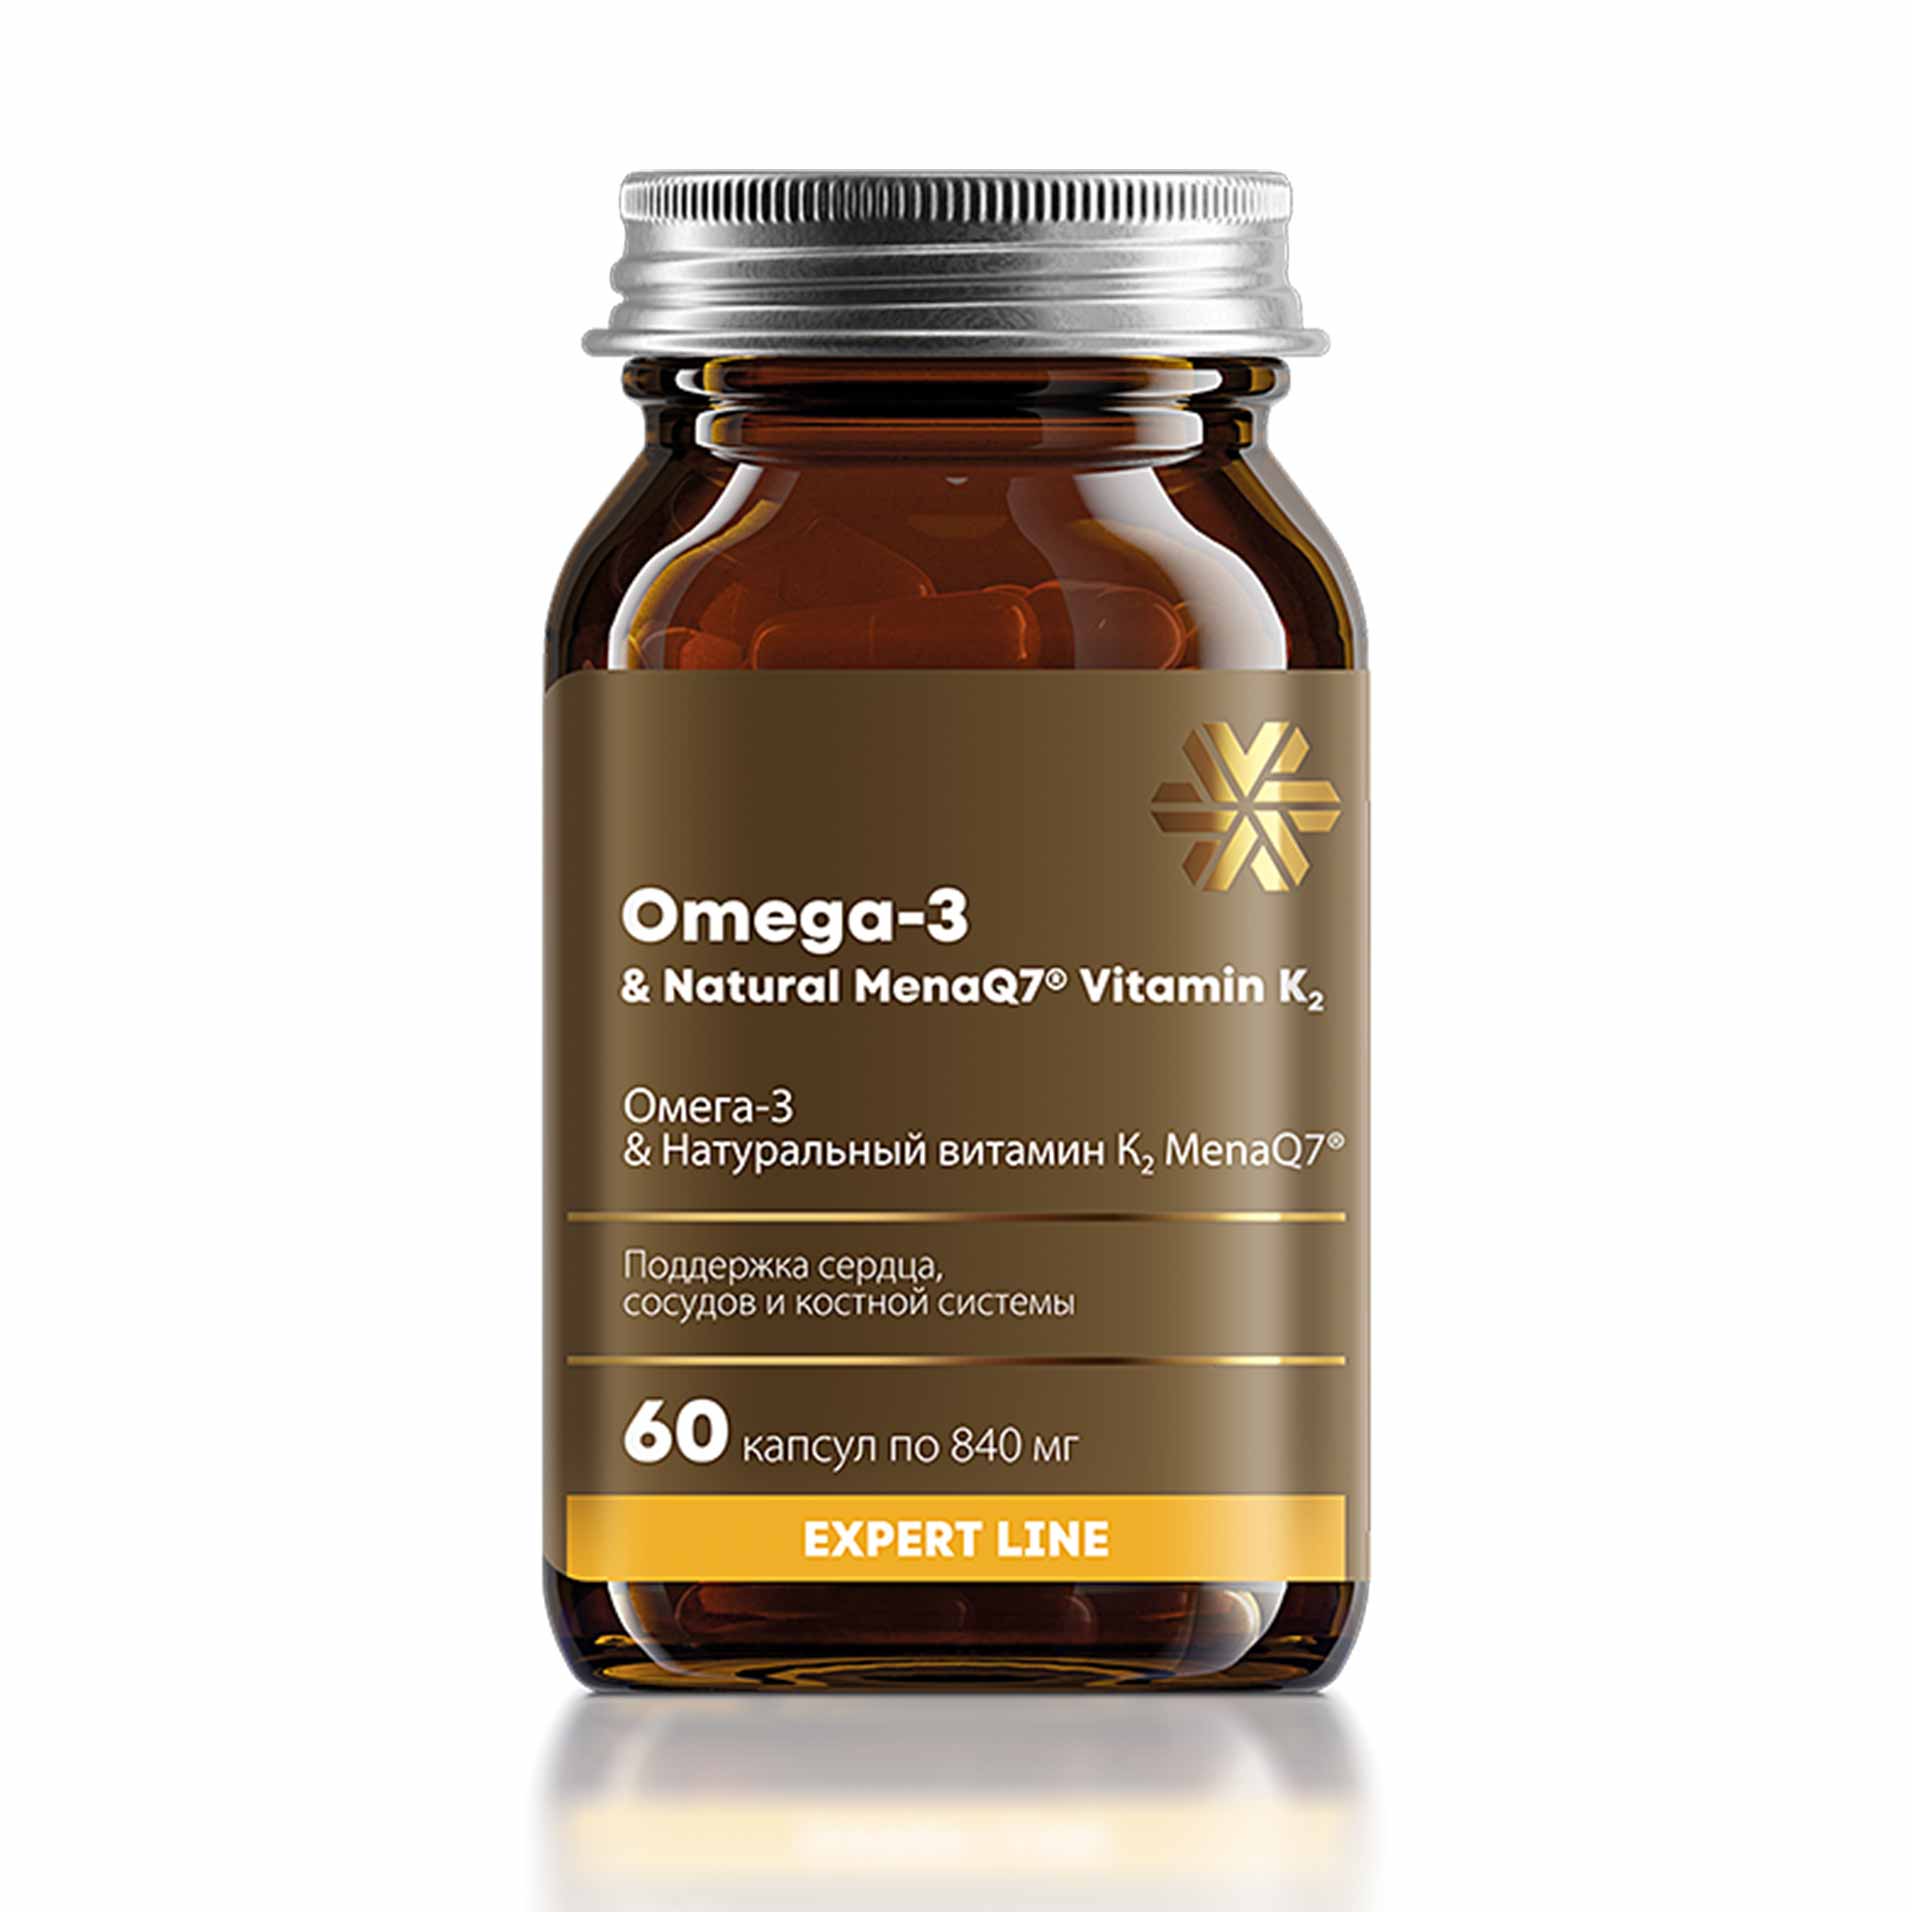 Омега-3 & Натуральный витамин К2 MenaQ7®